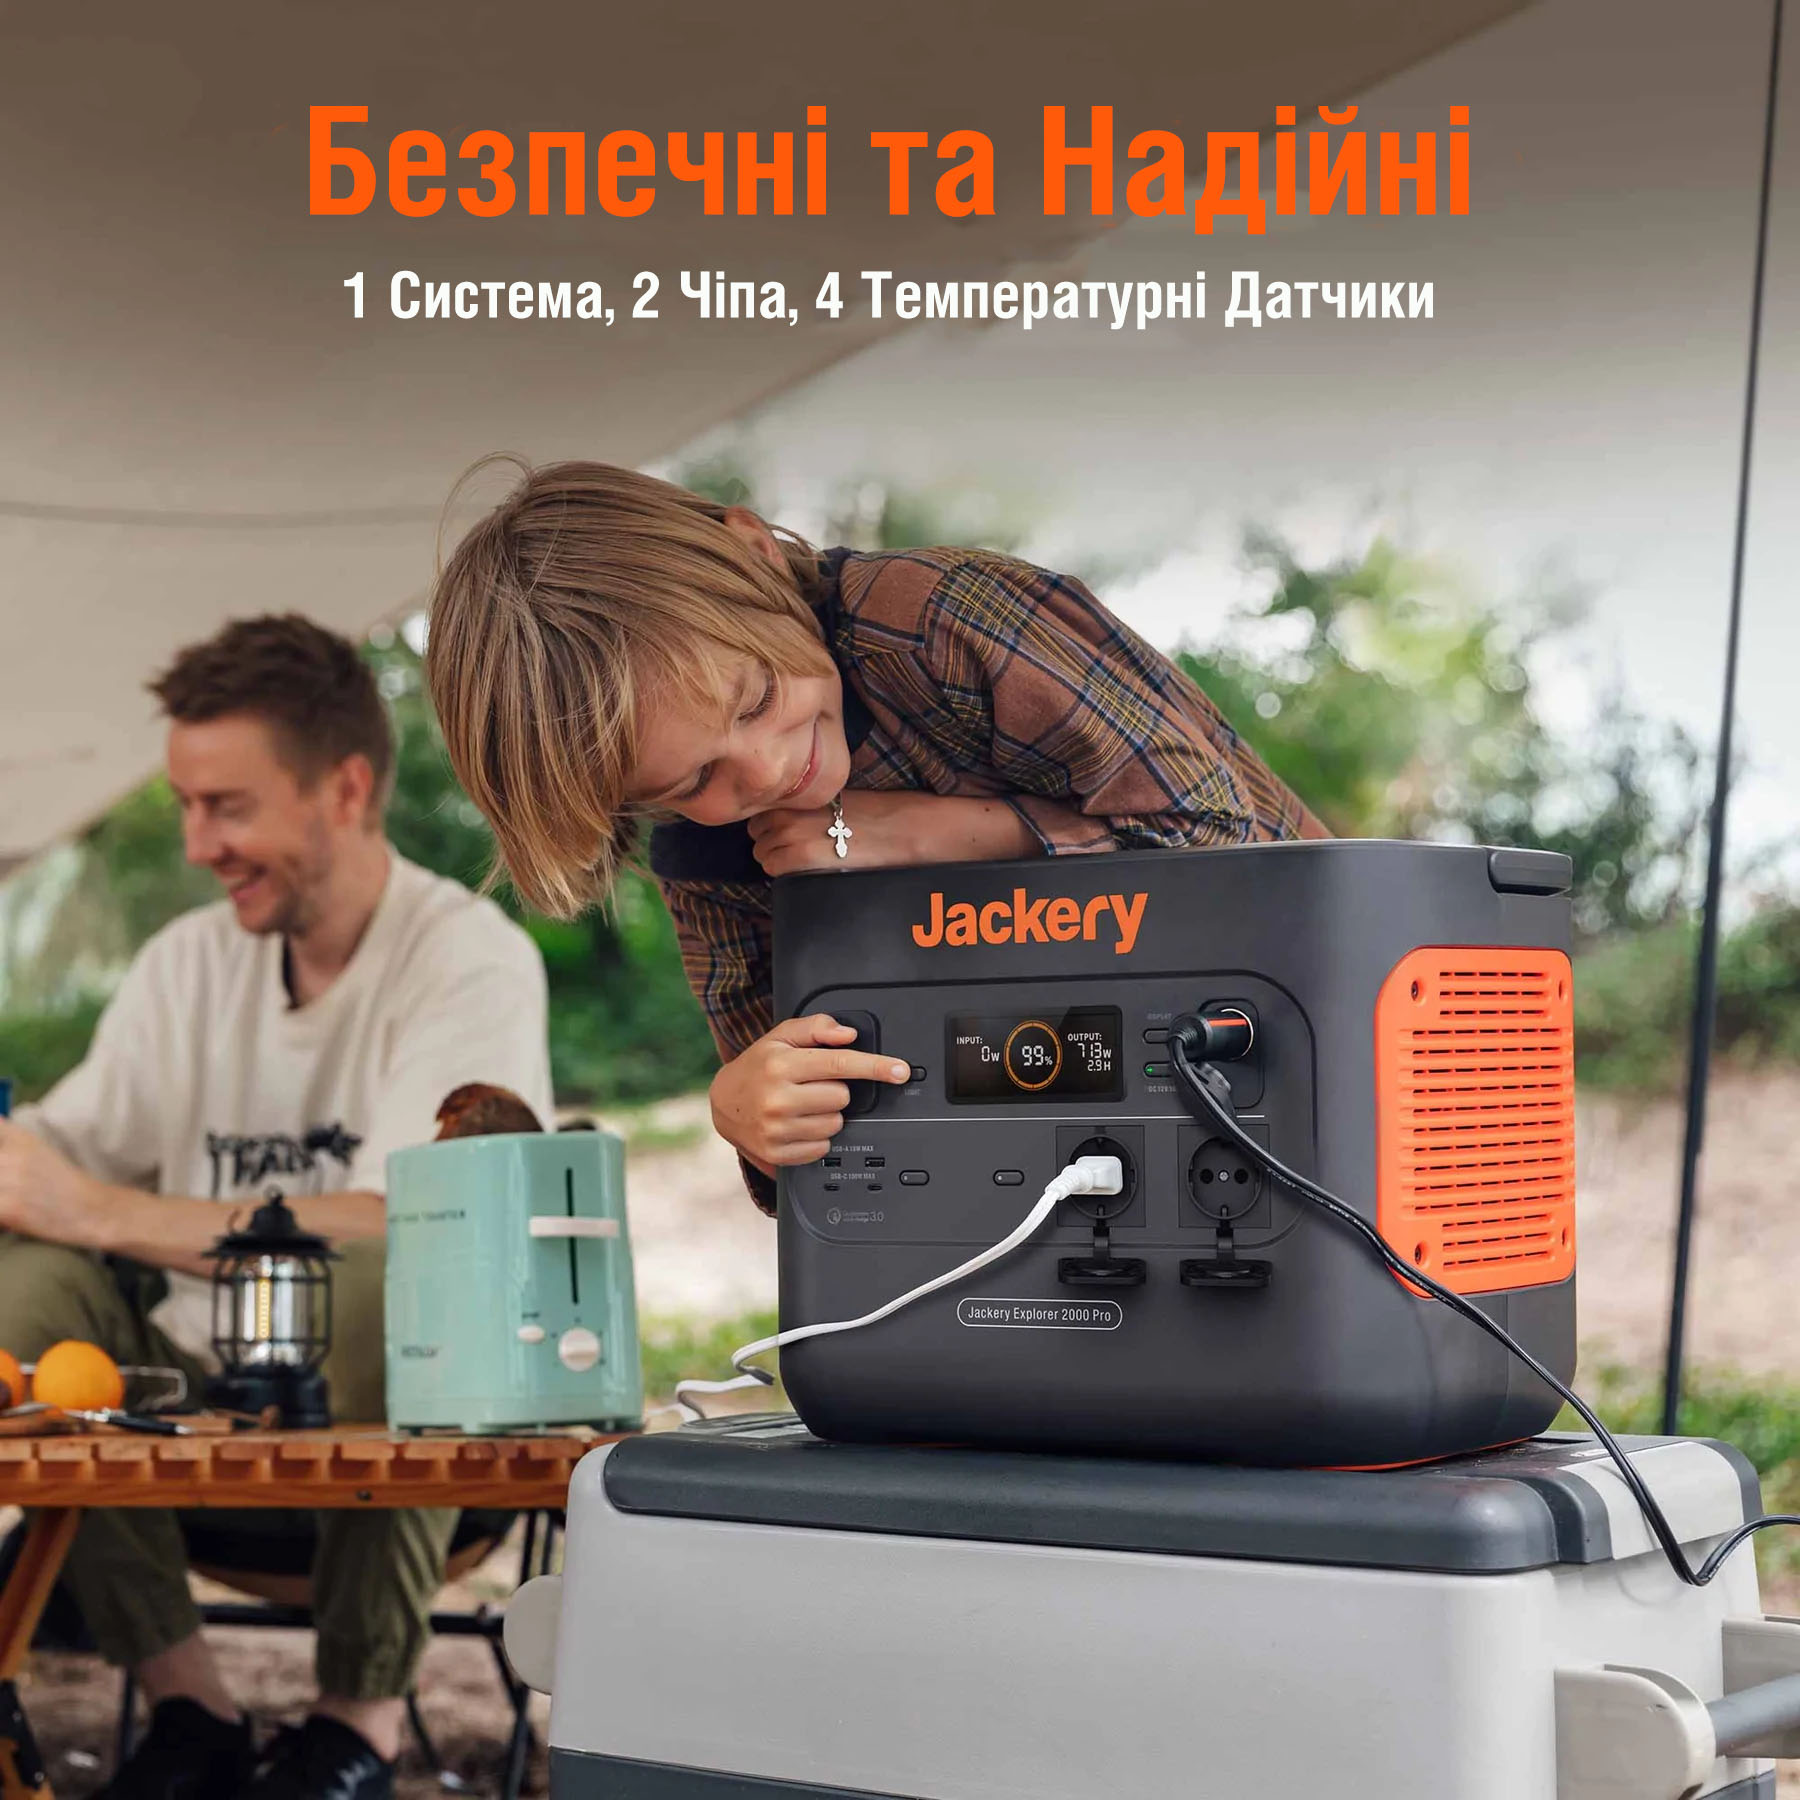 продаём Jackery Explorer 2000 Pro в Украине - фото 4